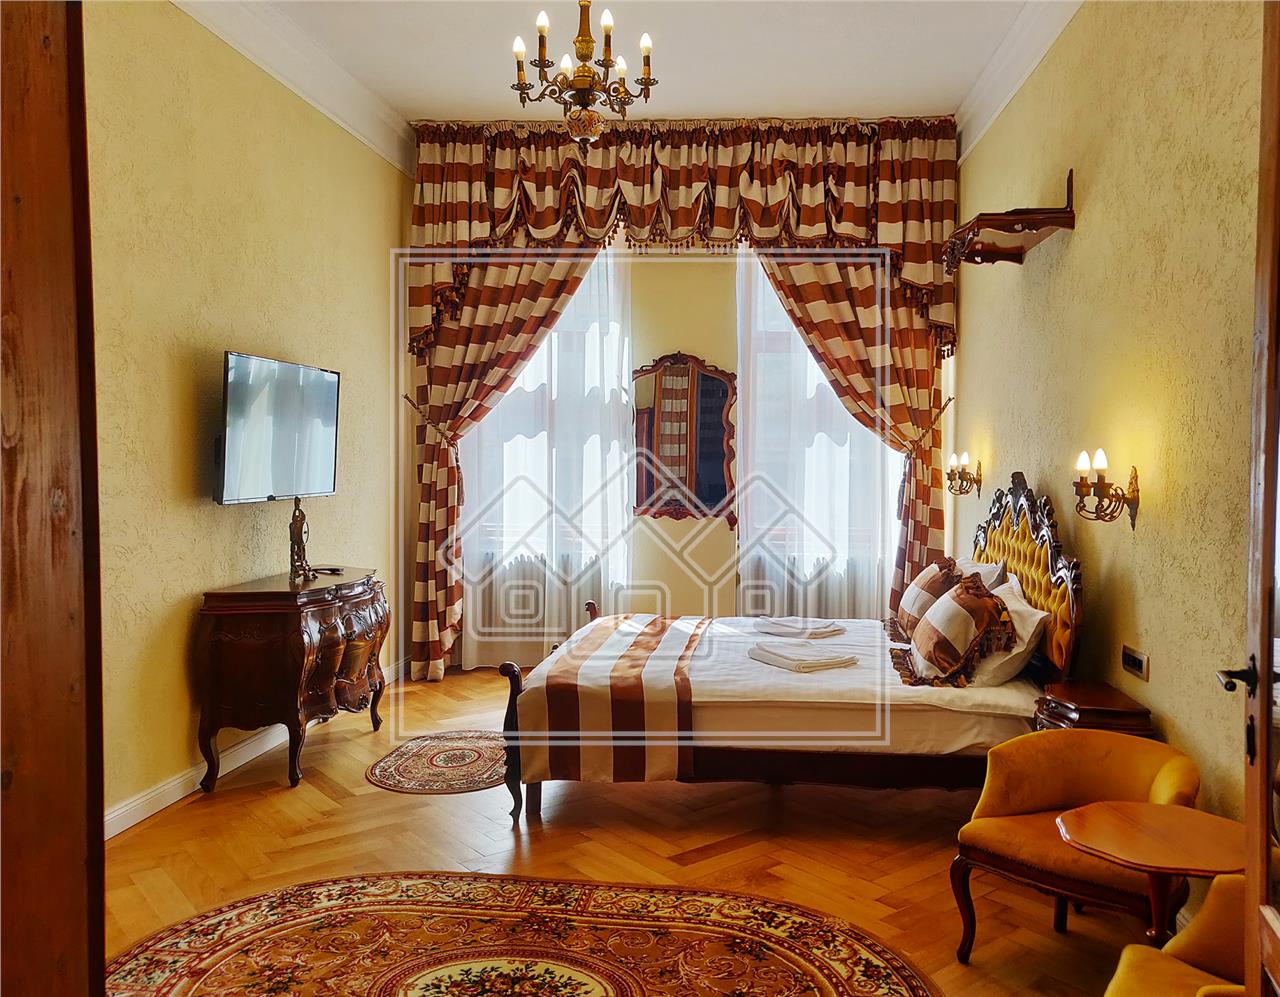 Wohnung zu vermieten in Sibiu - 3 Zimmer